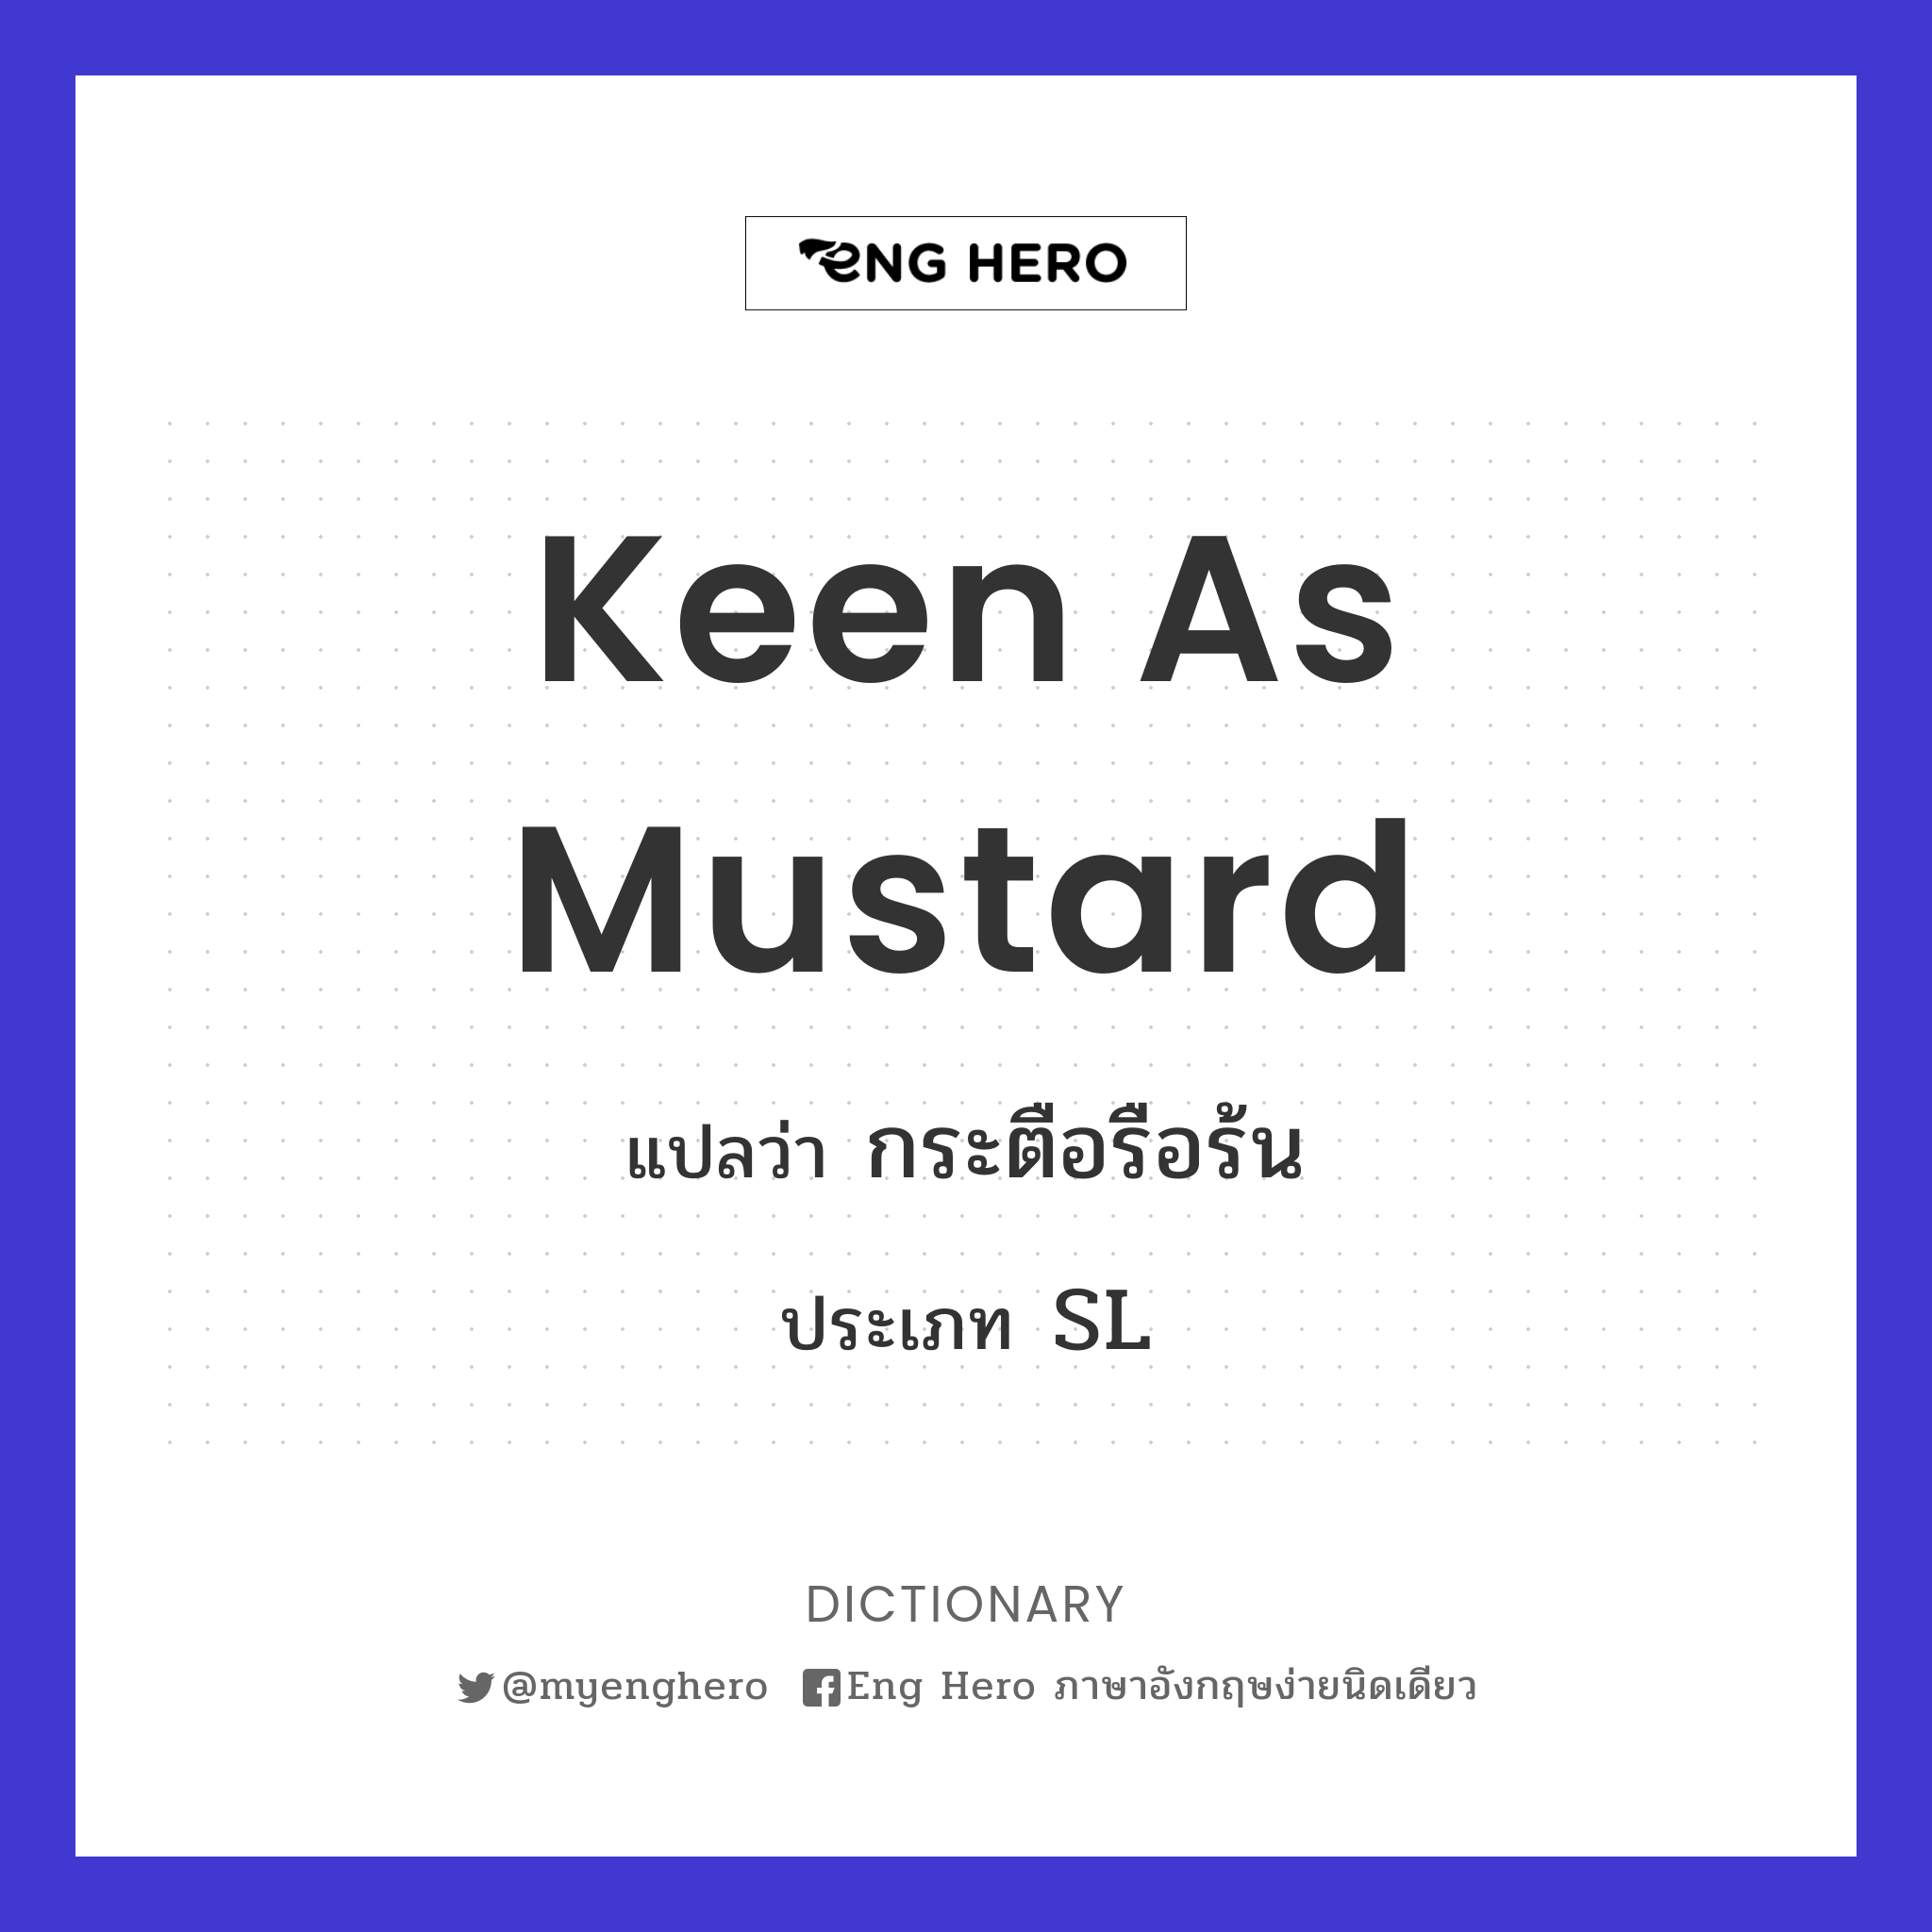 keen as mustard